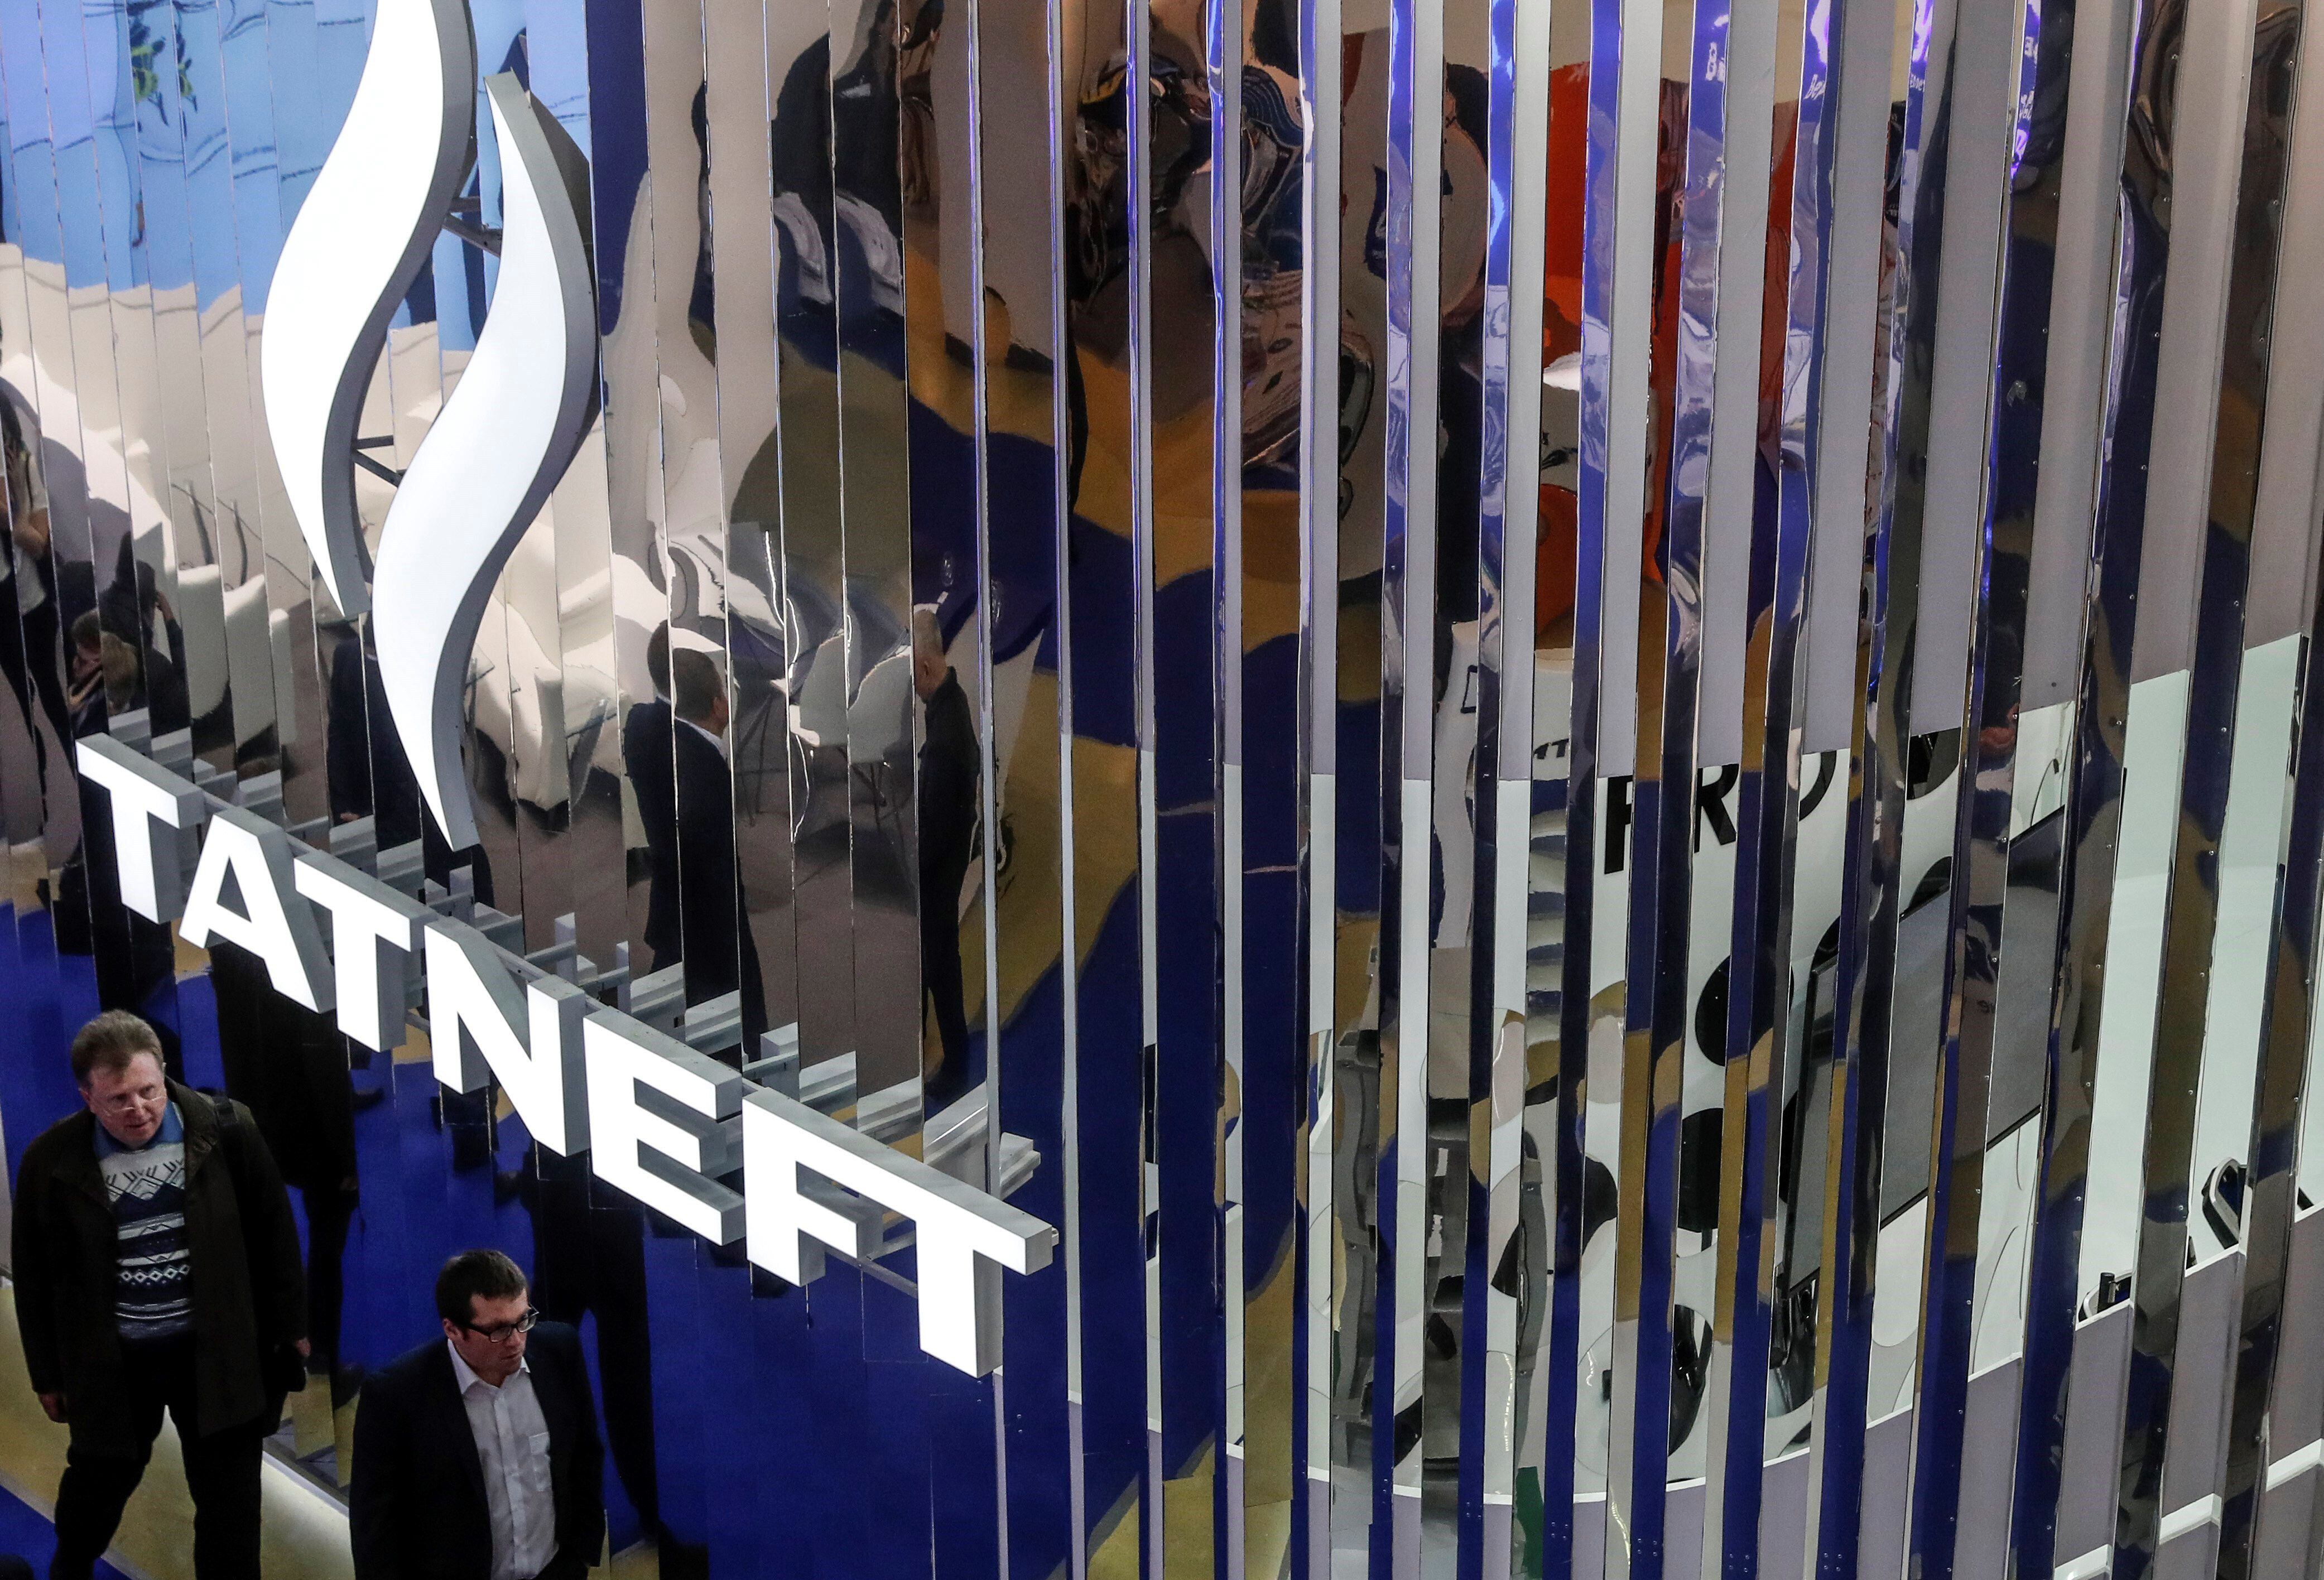 Logotipo de la compañía Tatneft, en una imagen de archivo. EPA/SERGEI ILNITSKY